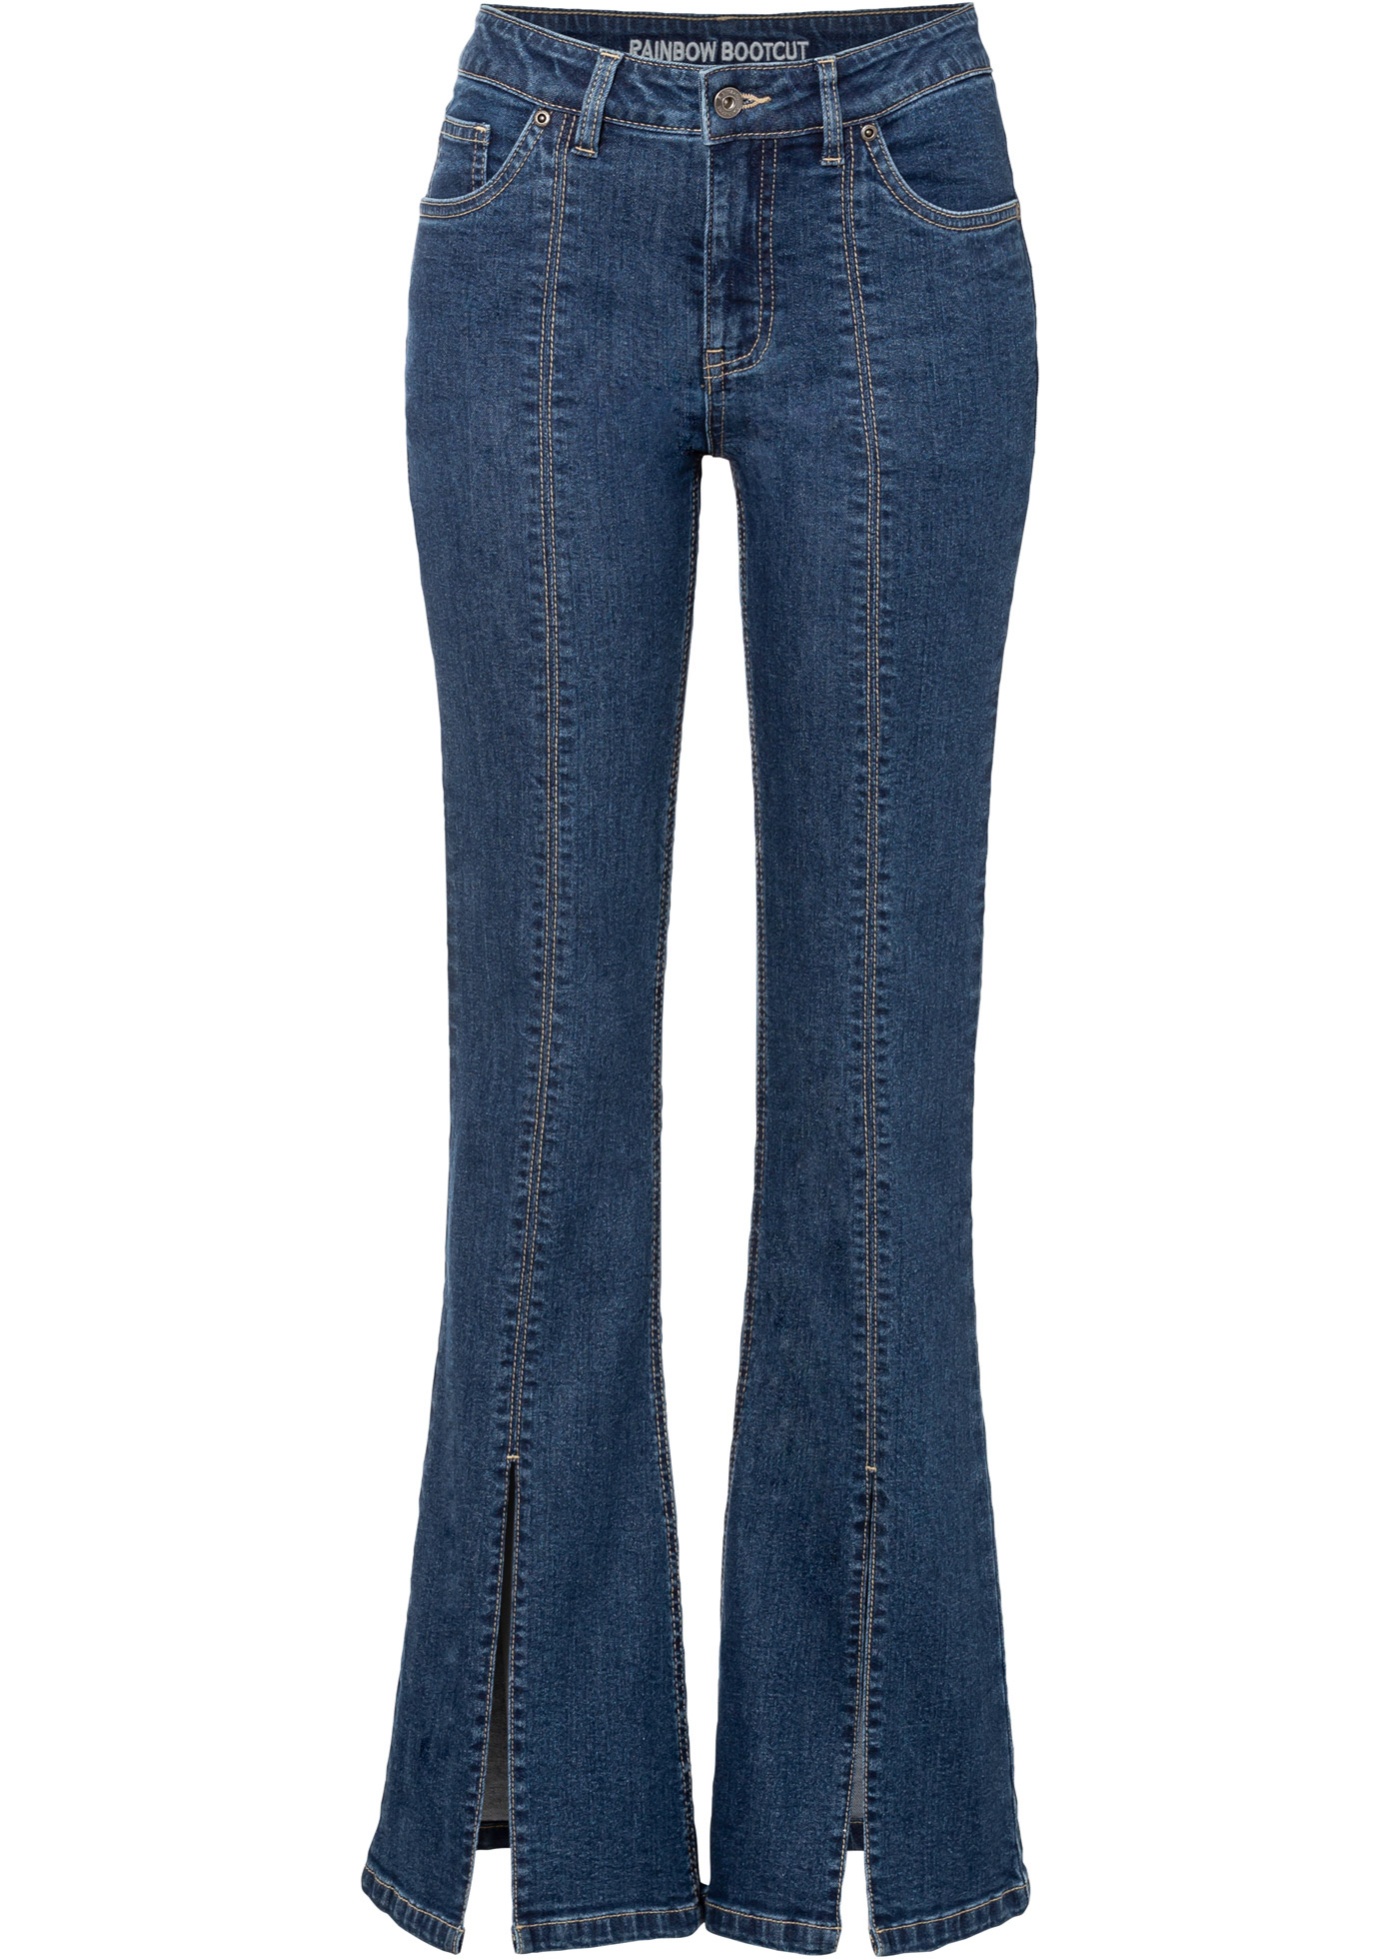 Zvonové džínsy s rozparkovým detailom s Positive Denim 1 Fabric